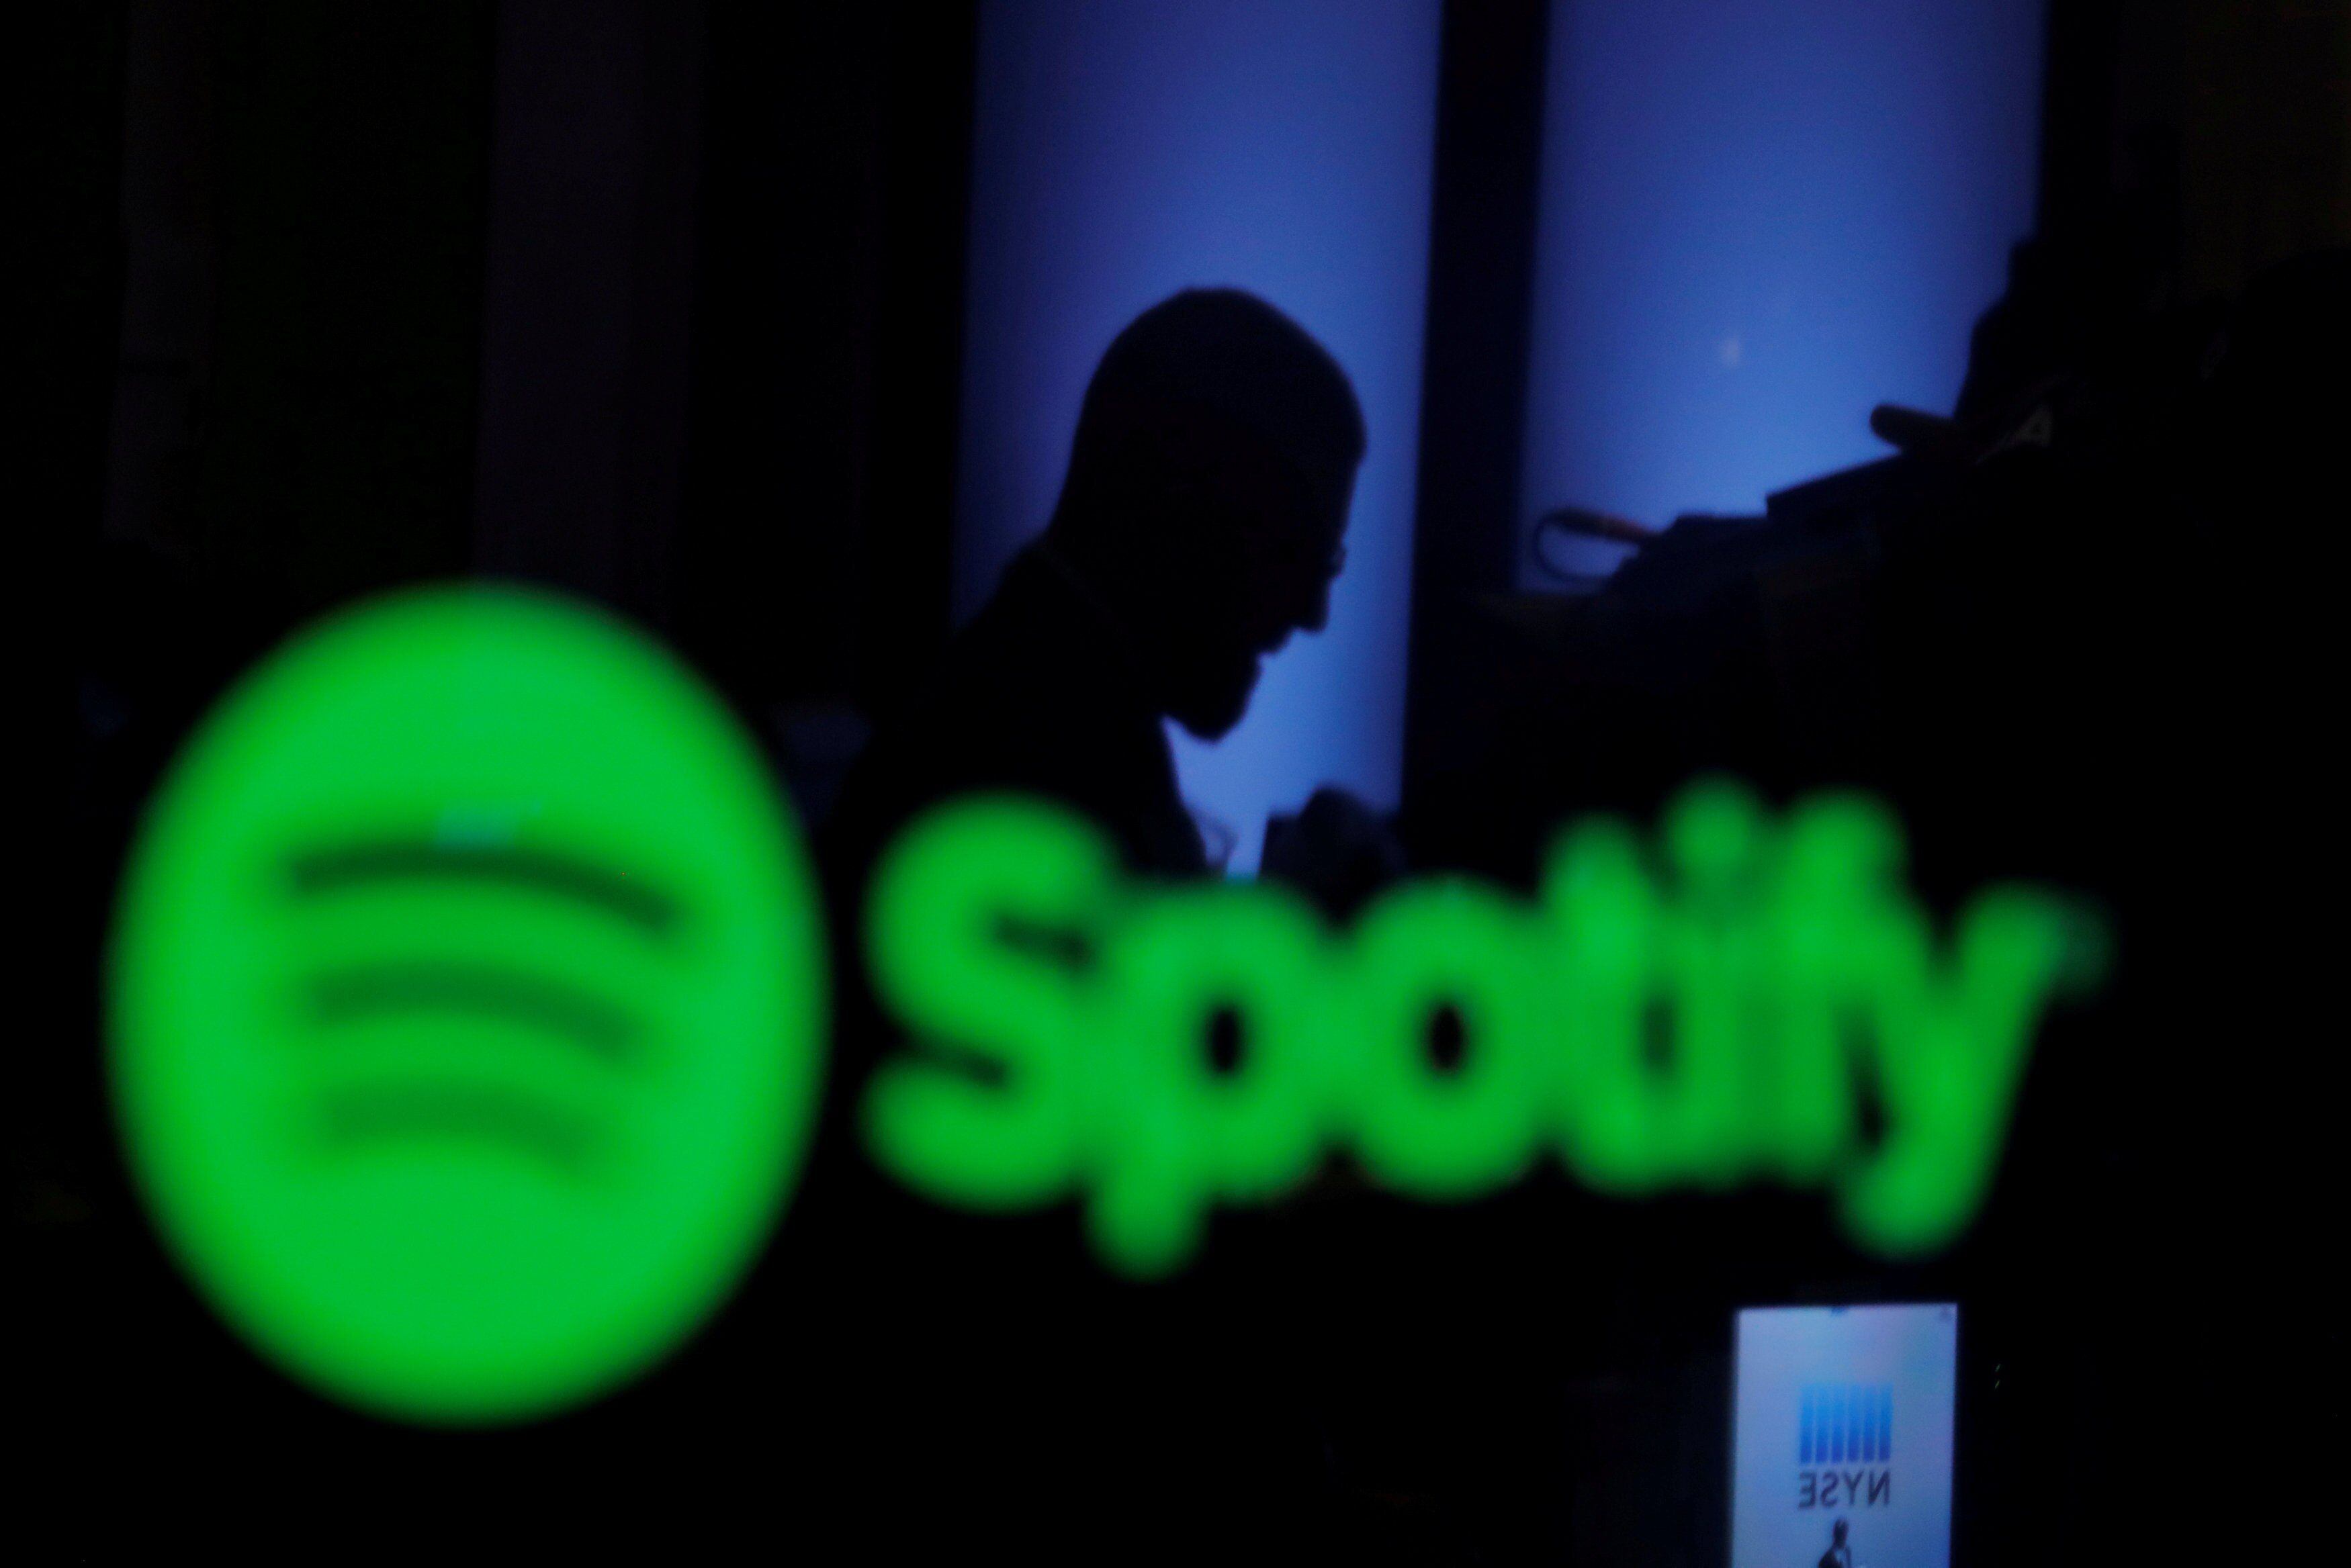 Série sobre a criação do Spotify chega em 2022 na Netflix - Olhar